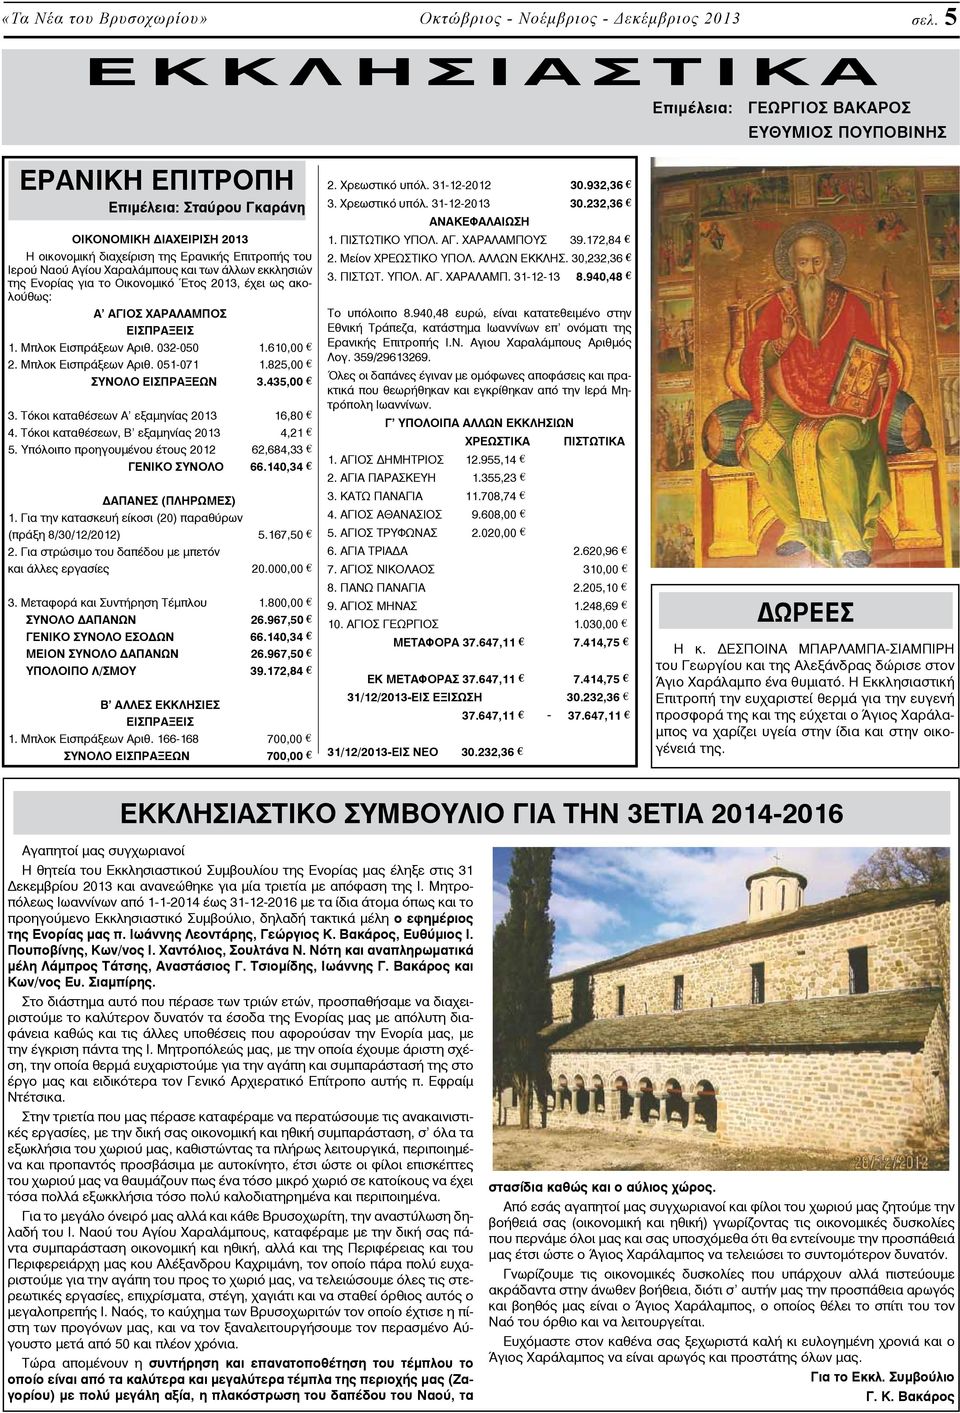 Ιερού Ναού Αγίου Χαραλάμπους και των άλλων εκκλησιών της Ενορίας για το Οικονομικό Έτος 2013, έχει ως ακολούθως: Α ΑΓΙΟΣ ΧΑΡΑΛΑΜΠΟΣ ΕΙΣΠΡΑΞΕΙΣ 1. Μπλοκ Εισπράξεων Αριθ. 032-050 1.610,00 2.